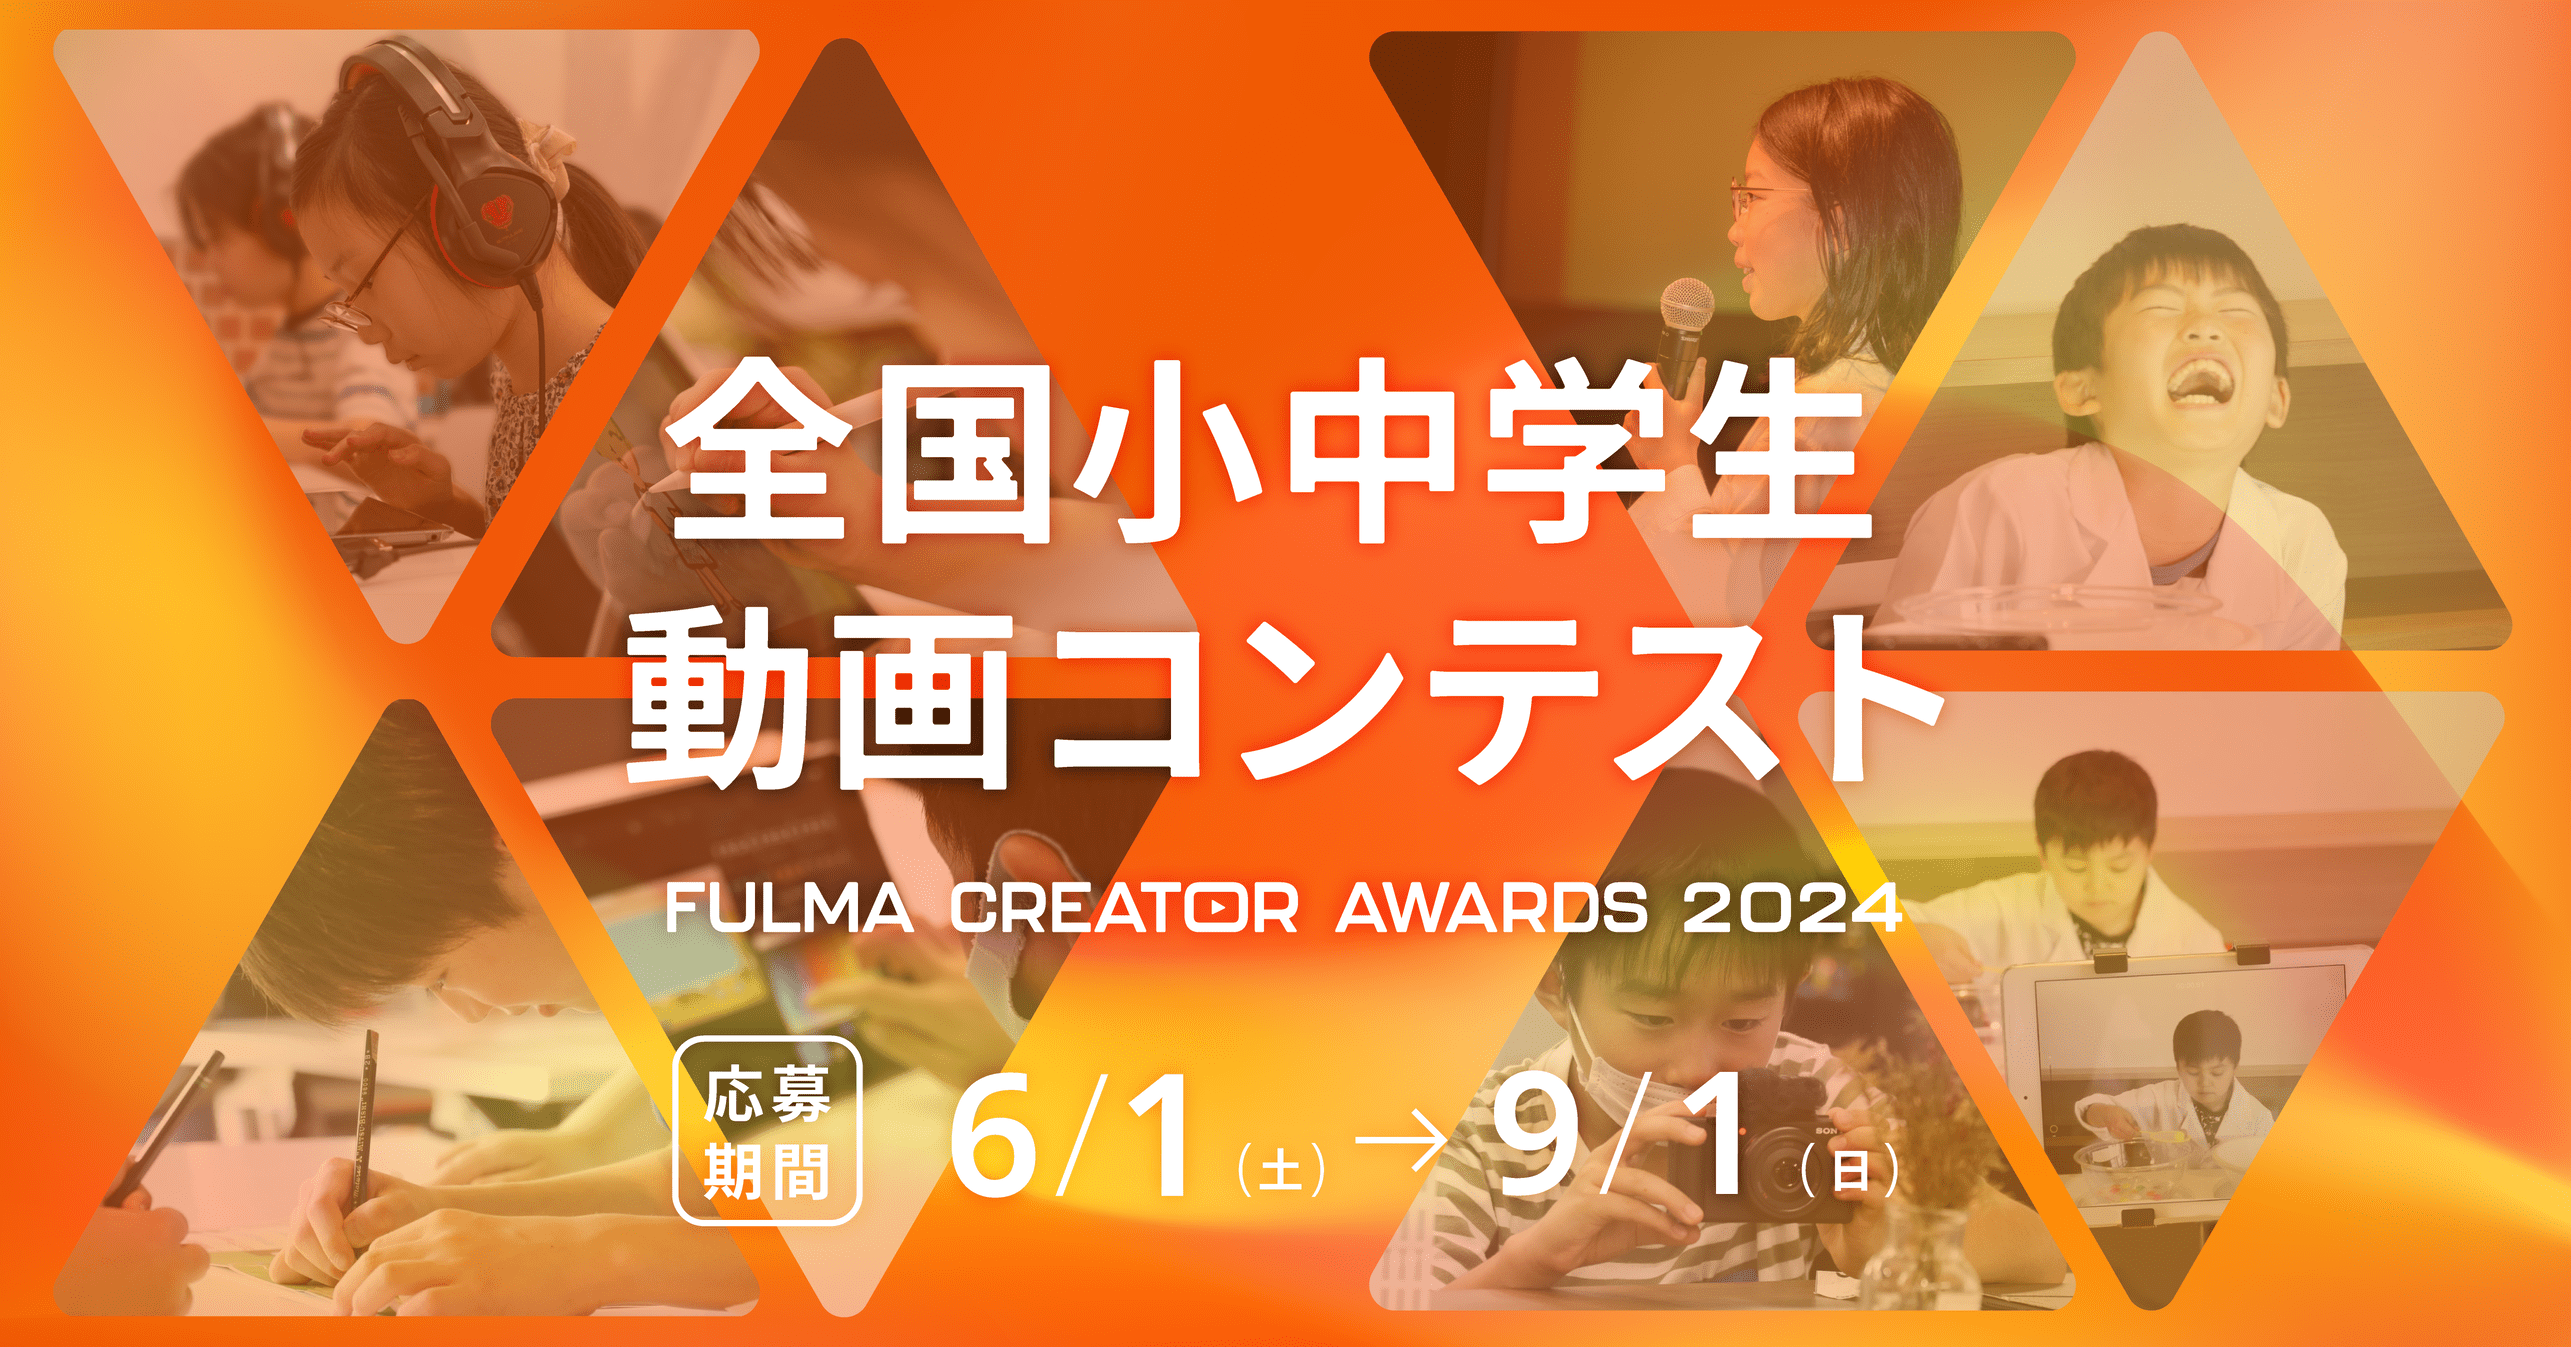 【中学生向け】ショート動画もOK! 全国小中学生動画コンテスト FULMA Creator Awards 2024